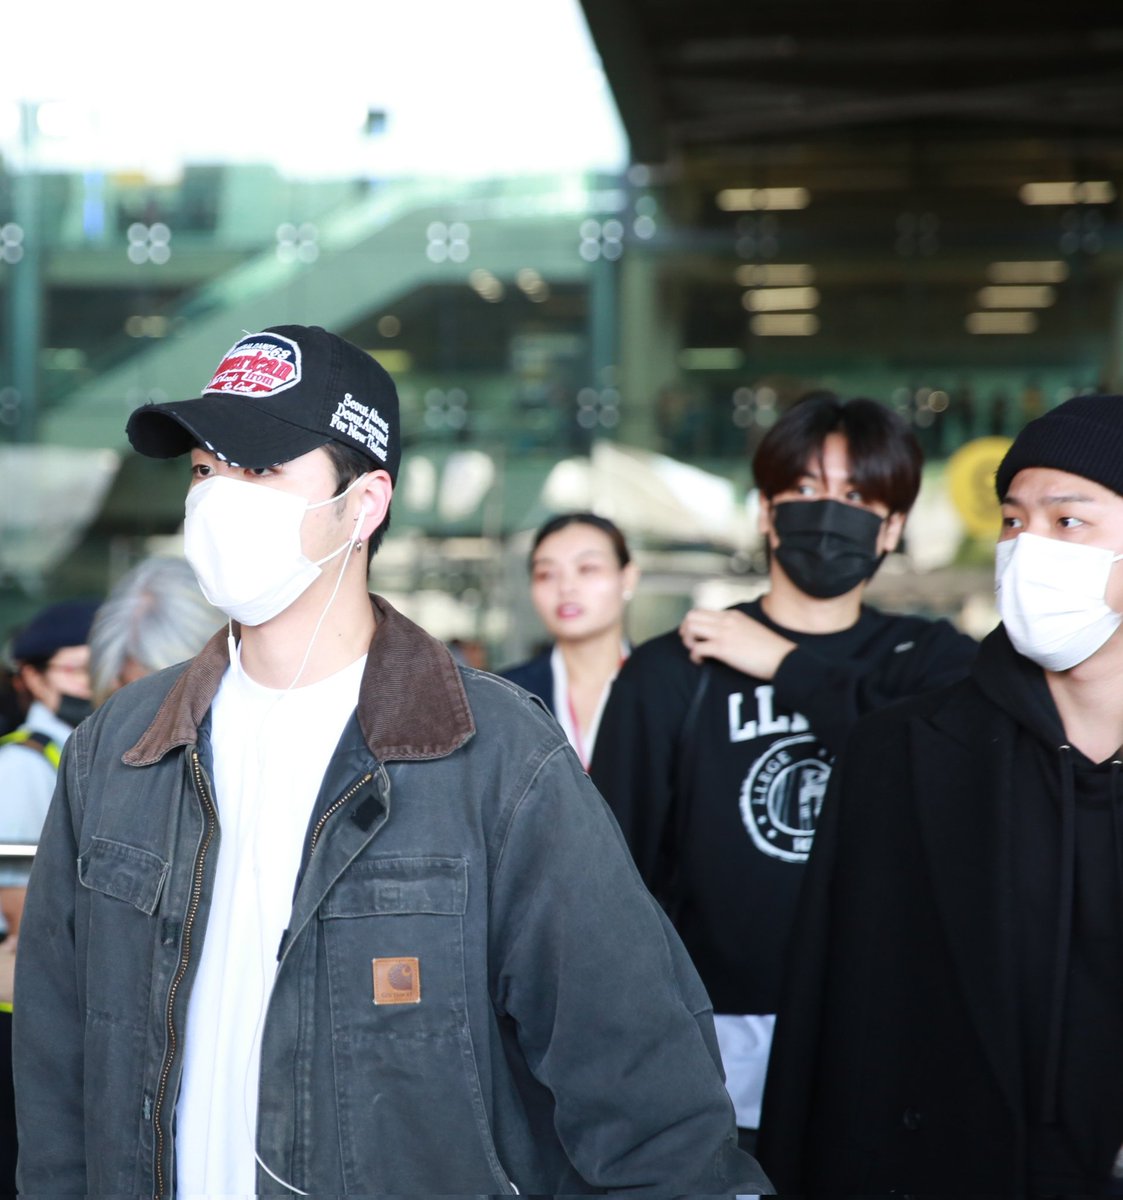 아이콘 막내❤️
Welcome iKON to Thailand
#LongTimeNoSee_iKON 
#iKON #아이콘